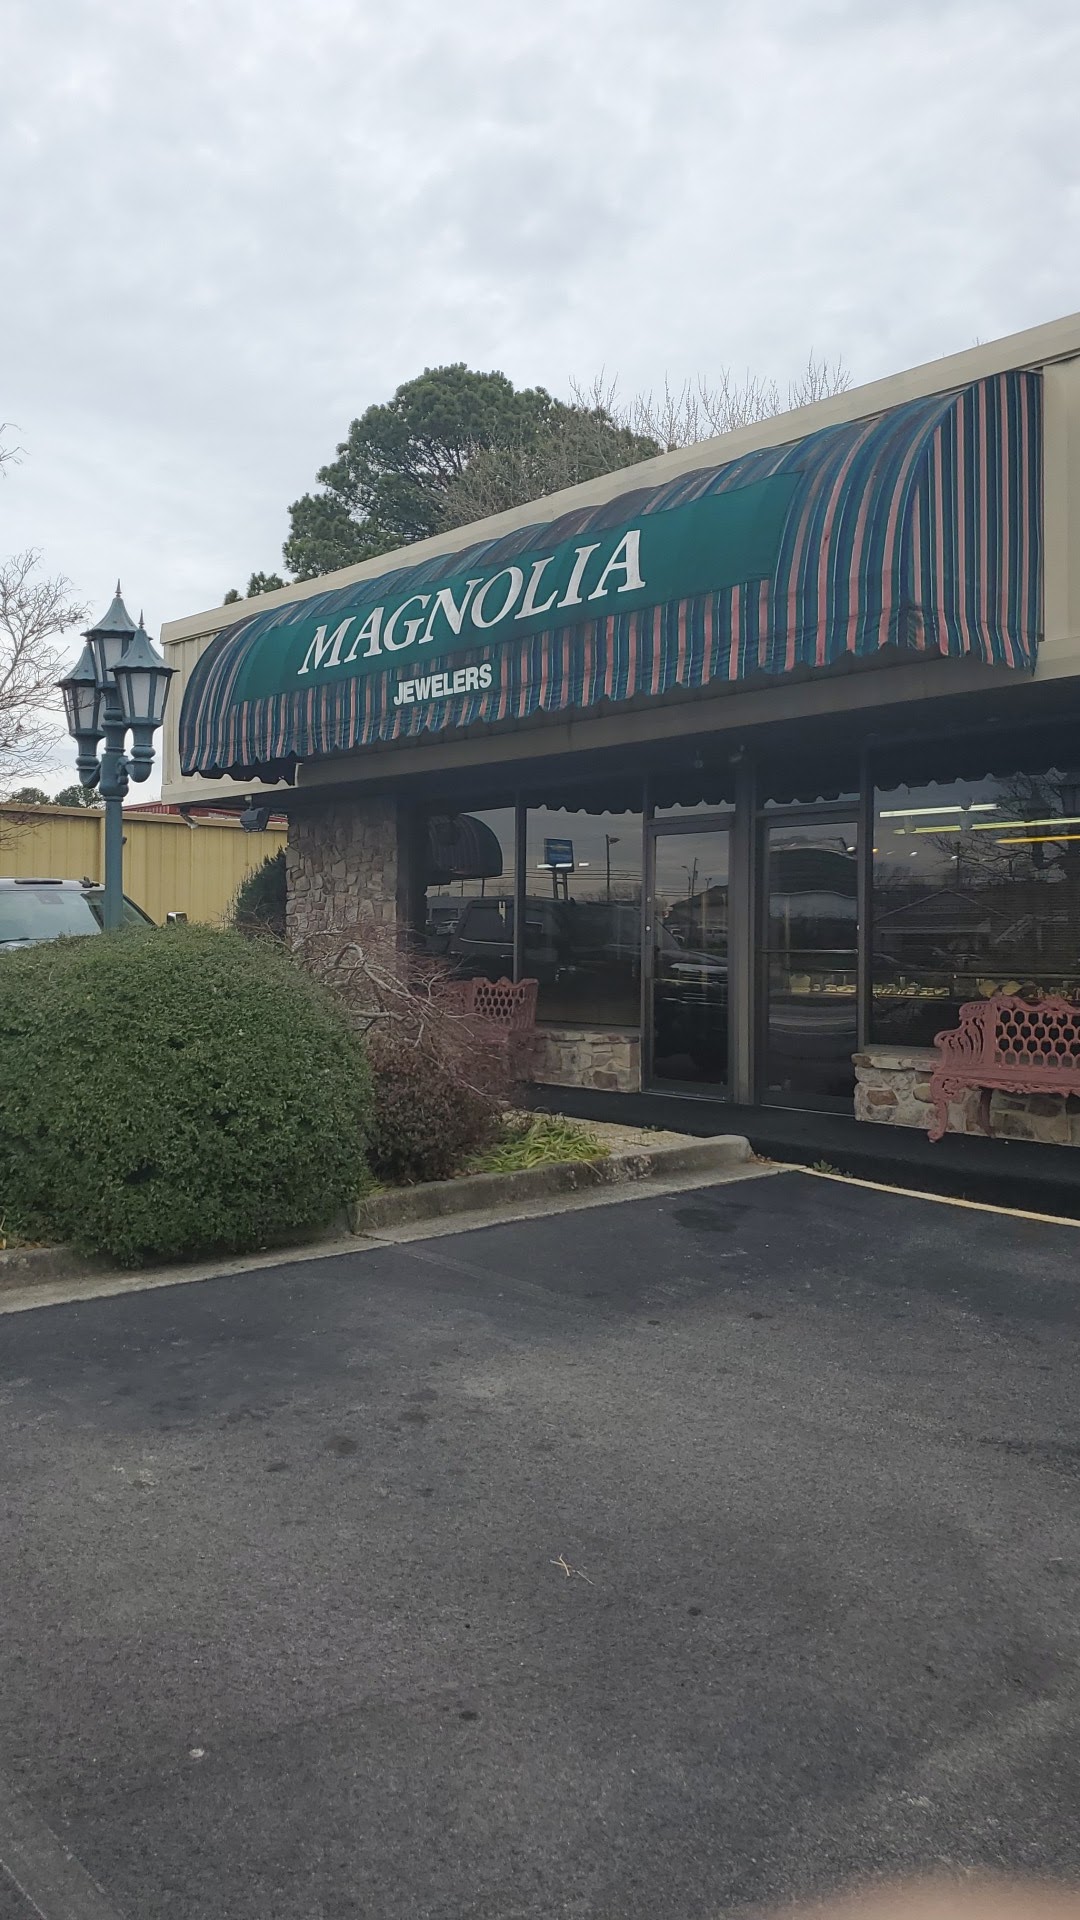 Magnolia Jewelers